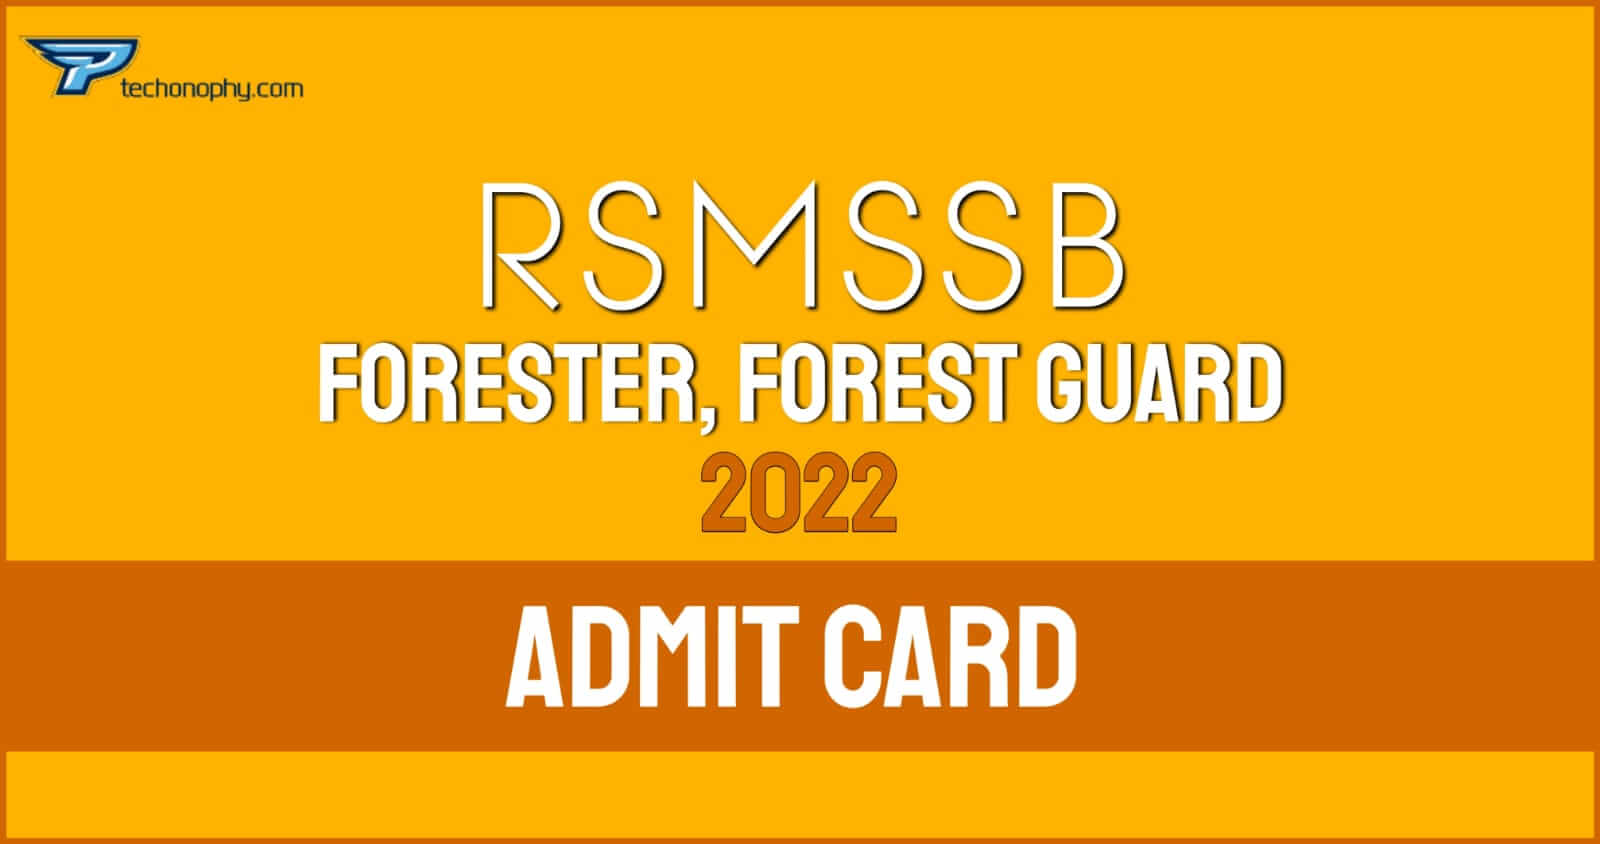 RSMSSB, Forest Guard 2022 Admit card